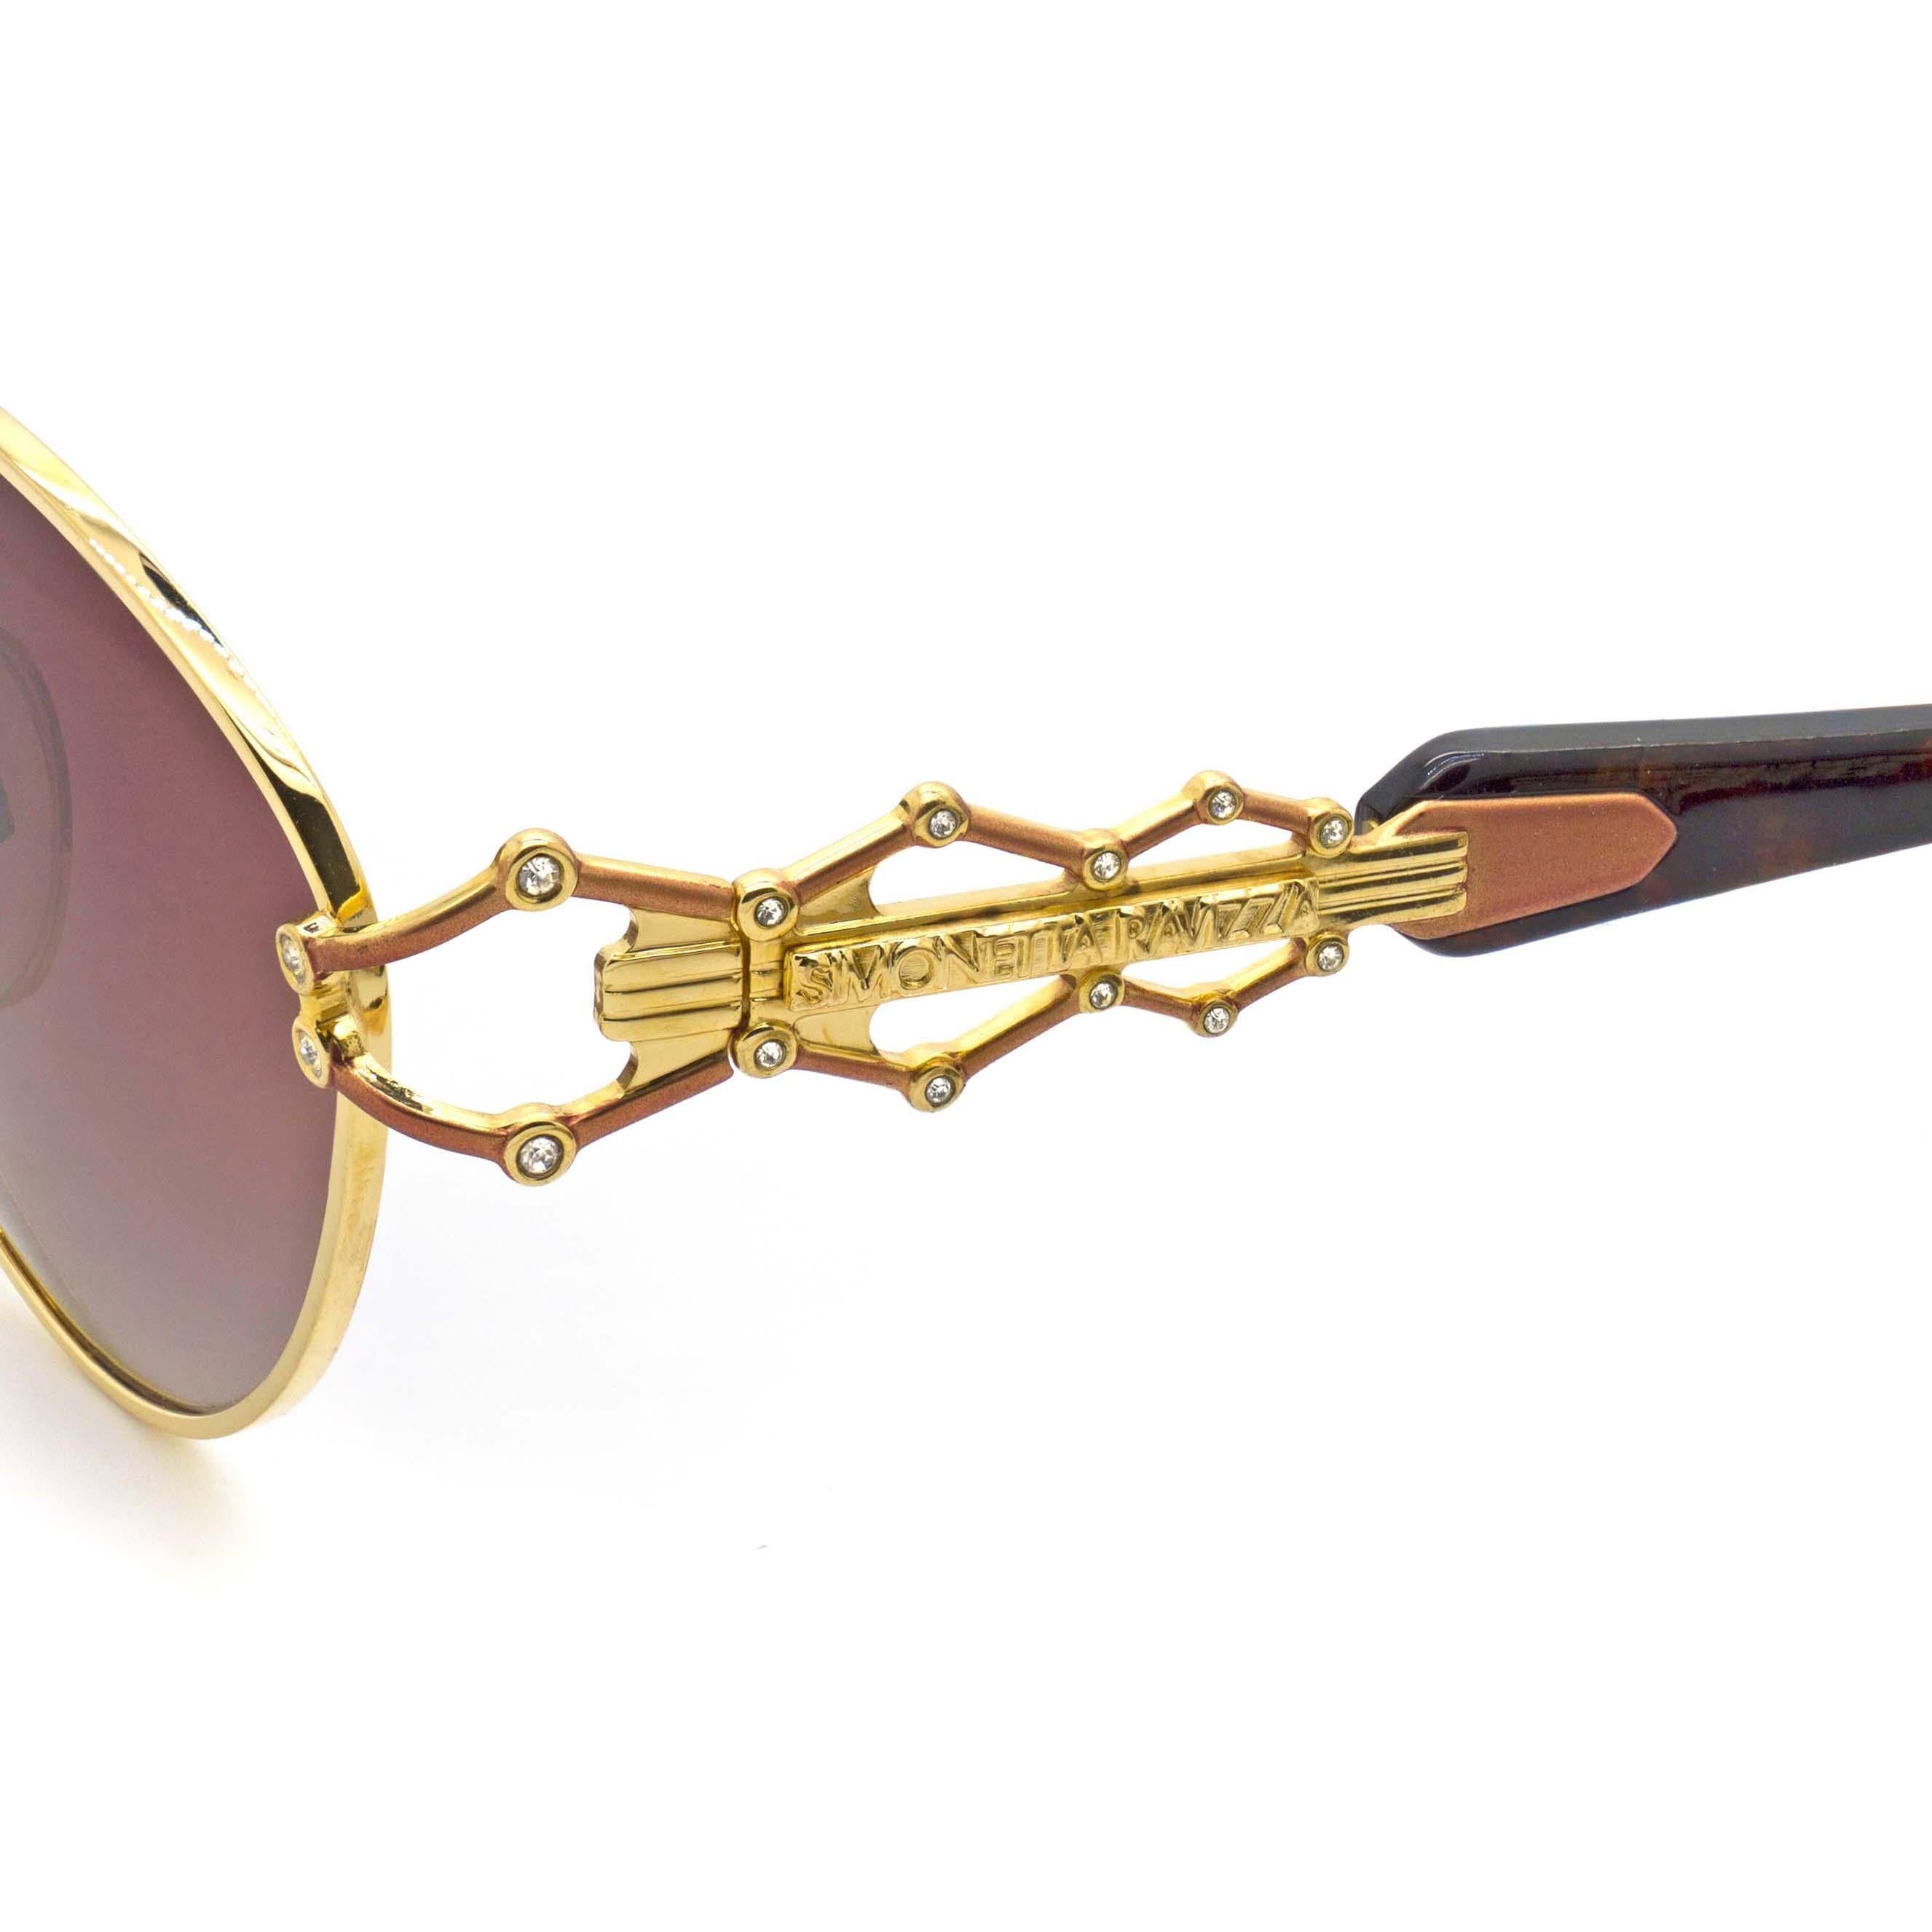 Simonetta Ravizza jewelry vintage sunglasses In New Condition For Sale In Santa Clarita, CA